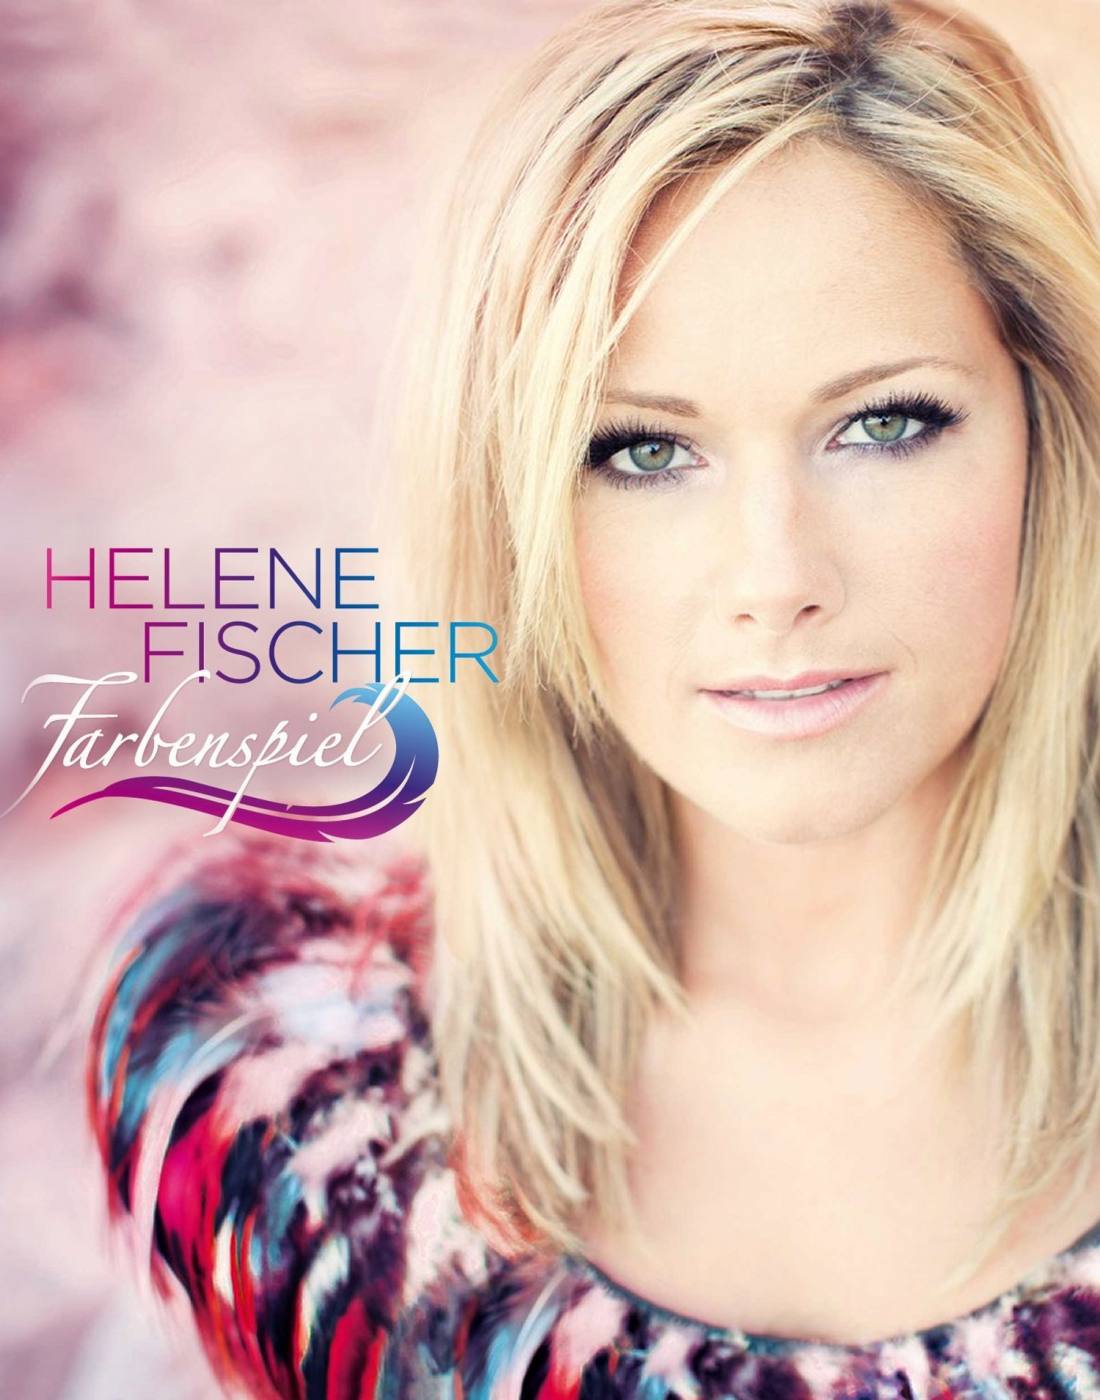 Helene Fischer Konzert Tournee 2013 & Tickets